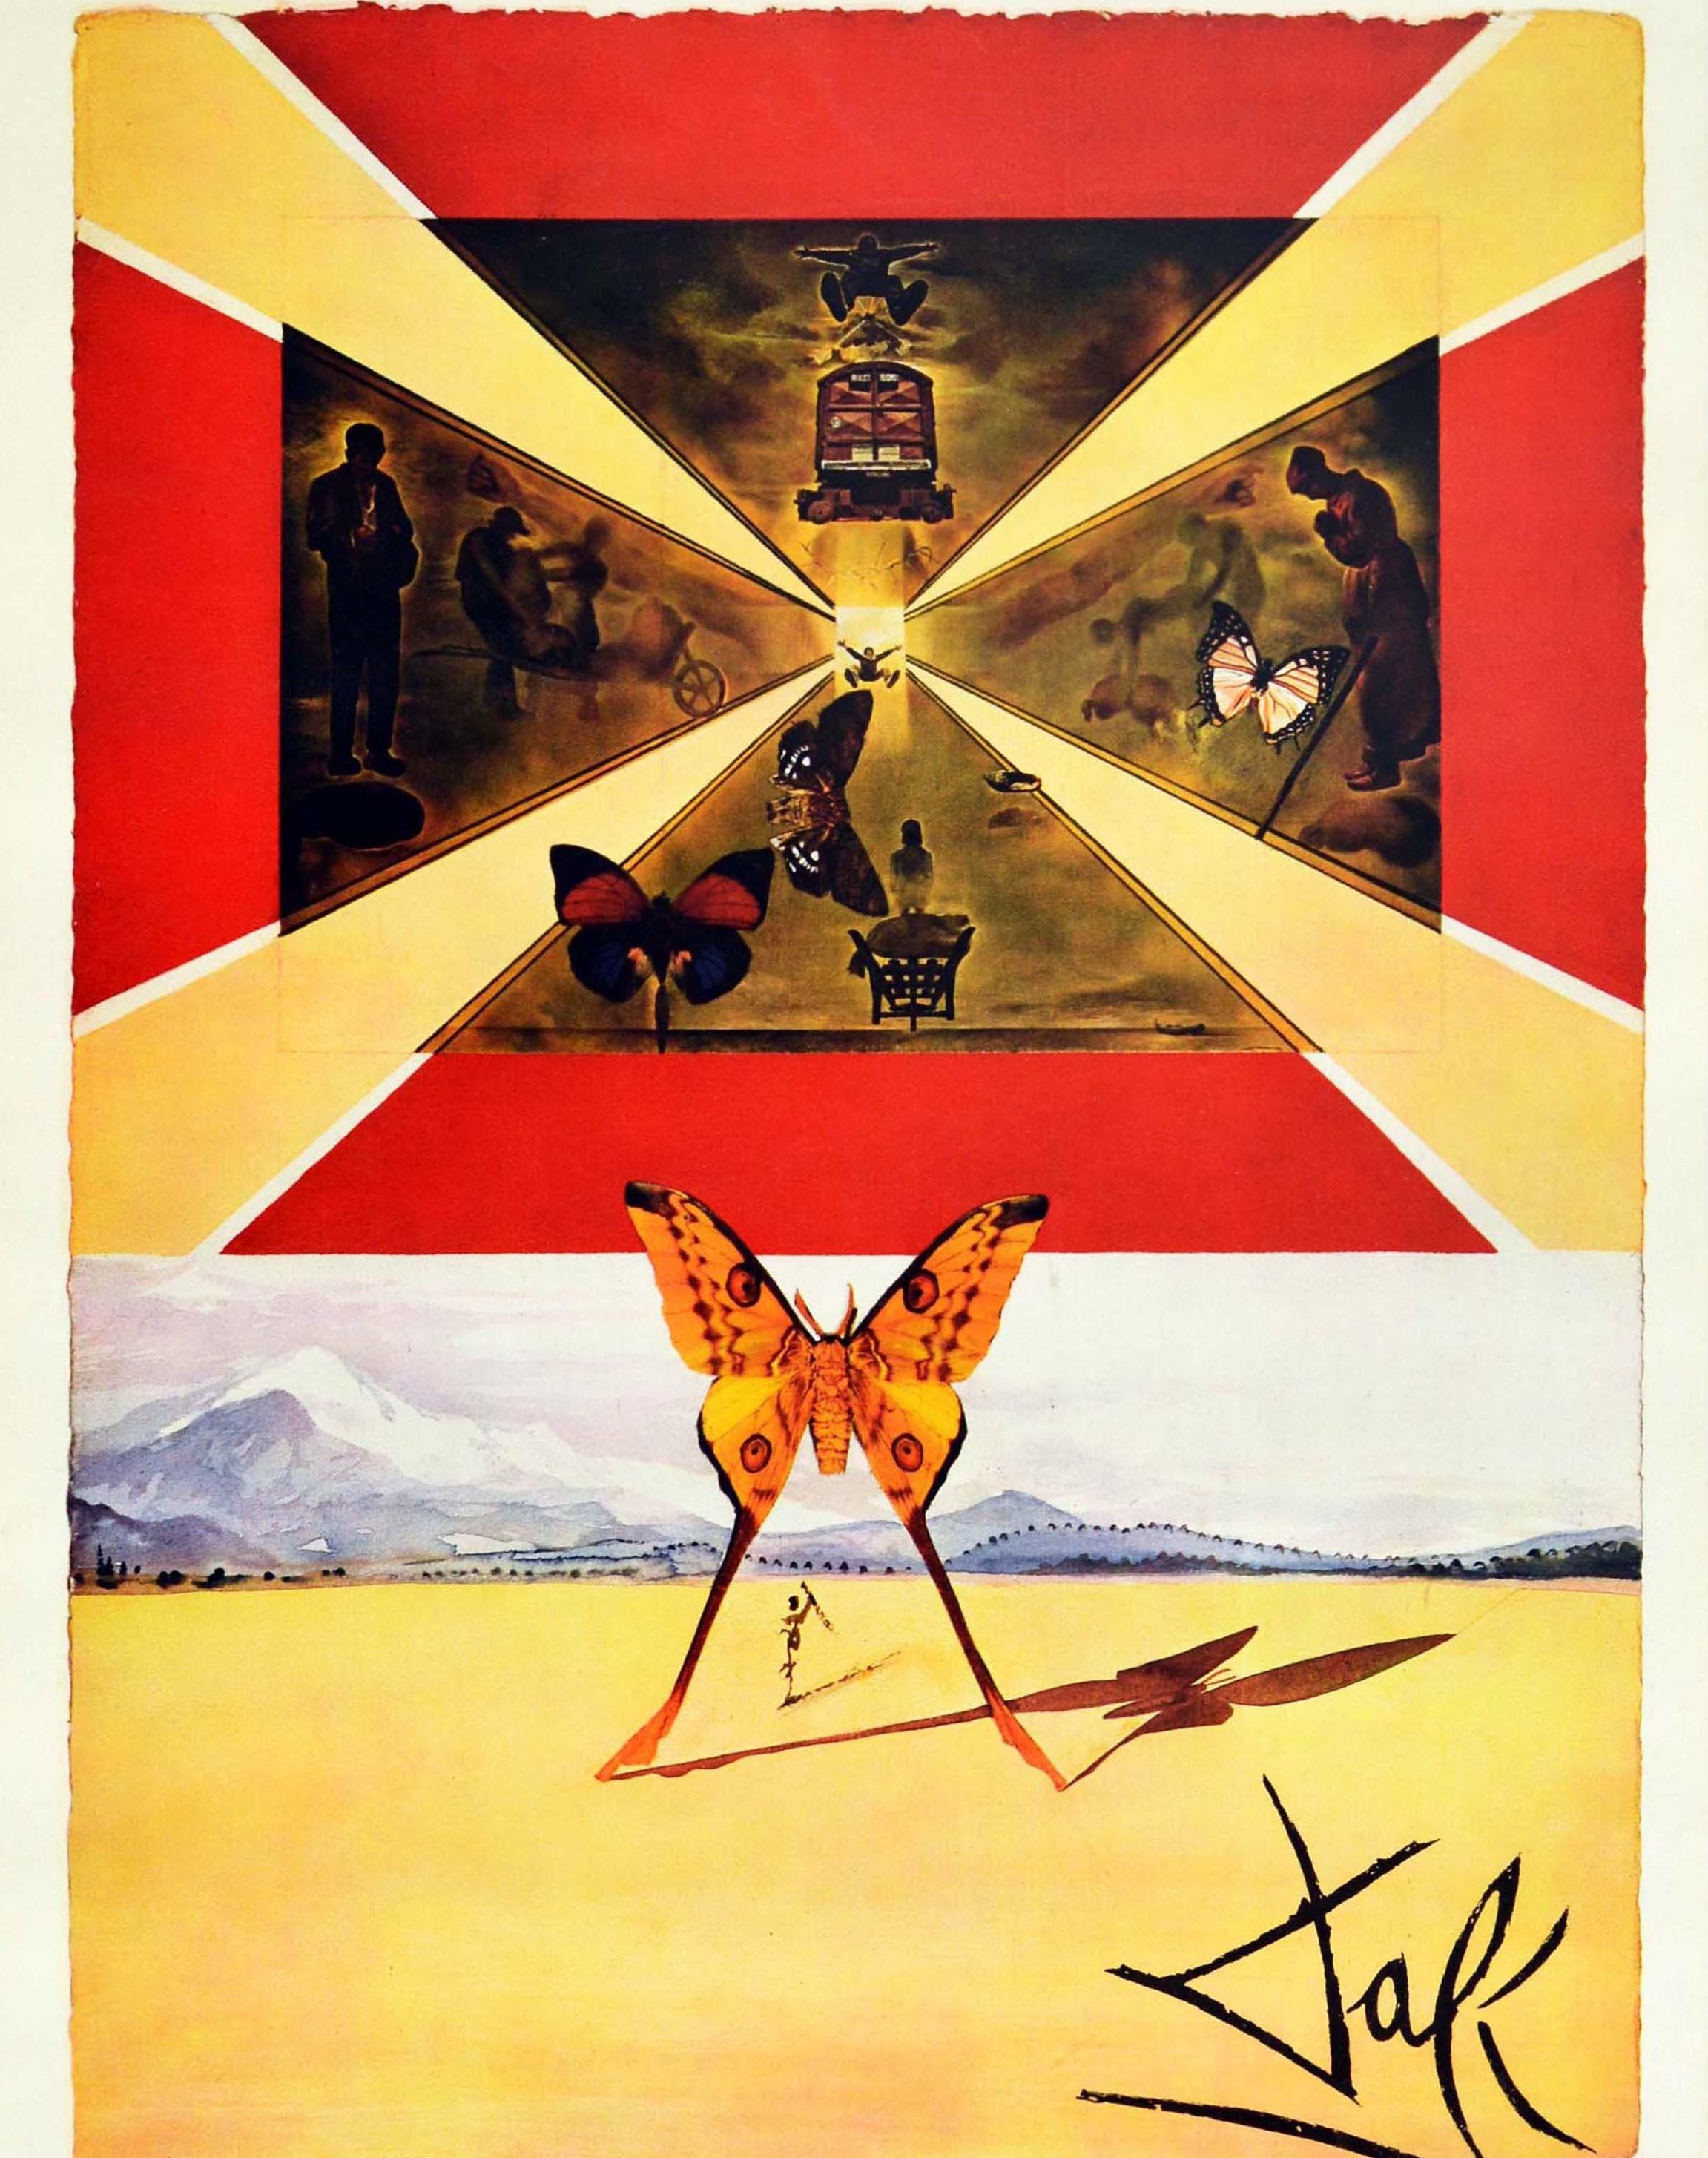 Original-Vintage-Poster Roussillon von Dali für SNCF Railways, Schmetterlingsdesign (Orange), Print, von Salvador Dalí